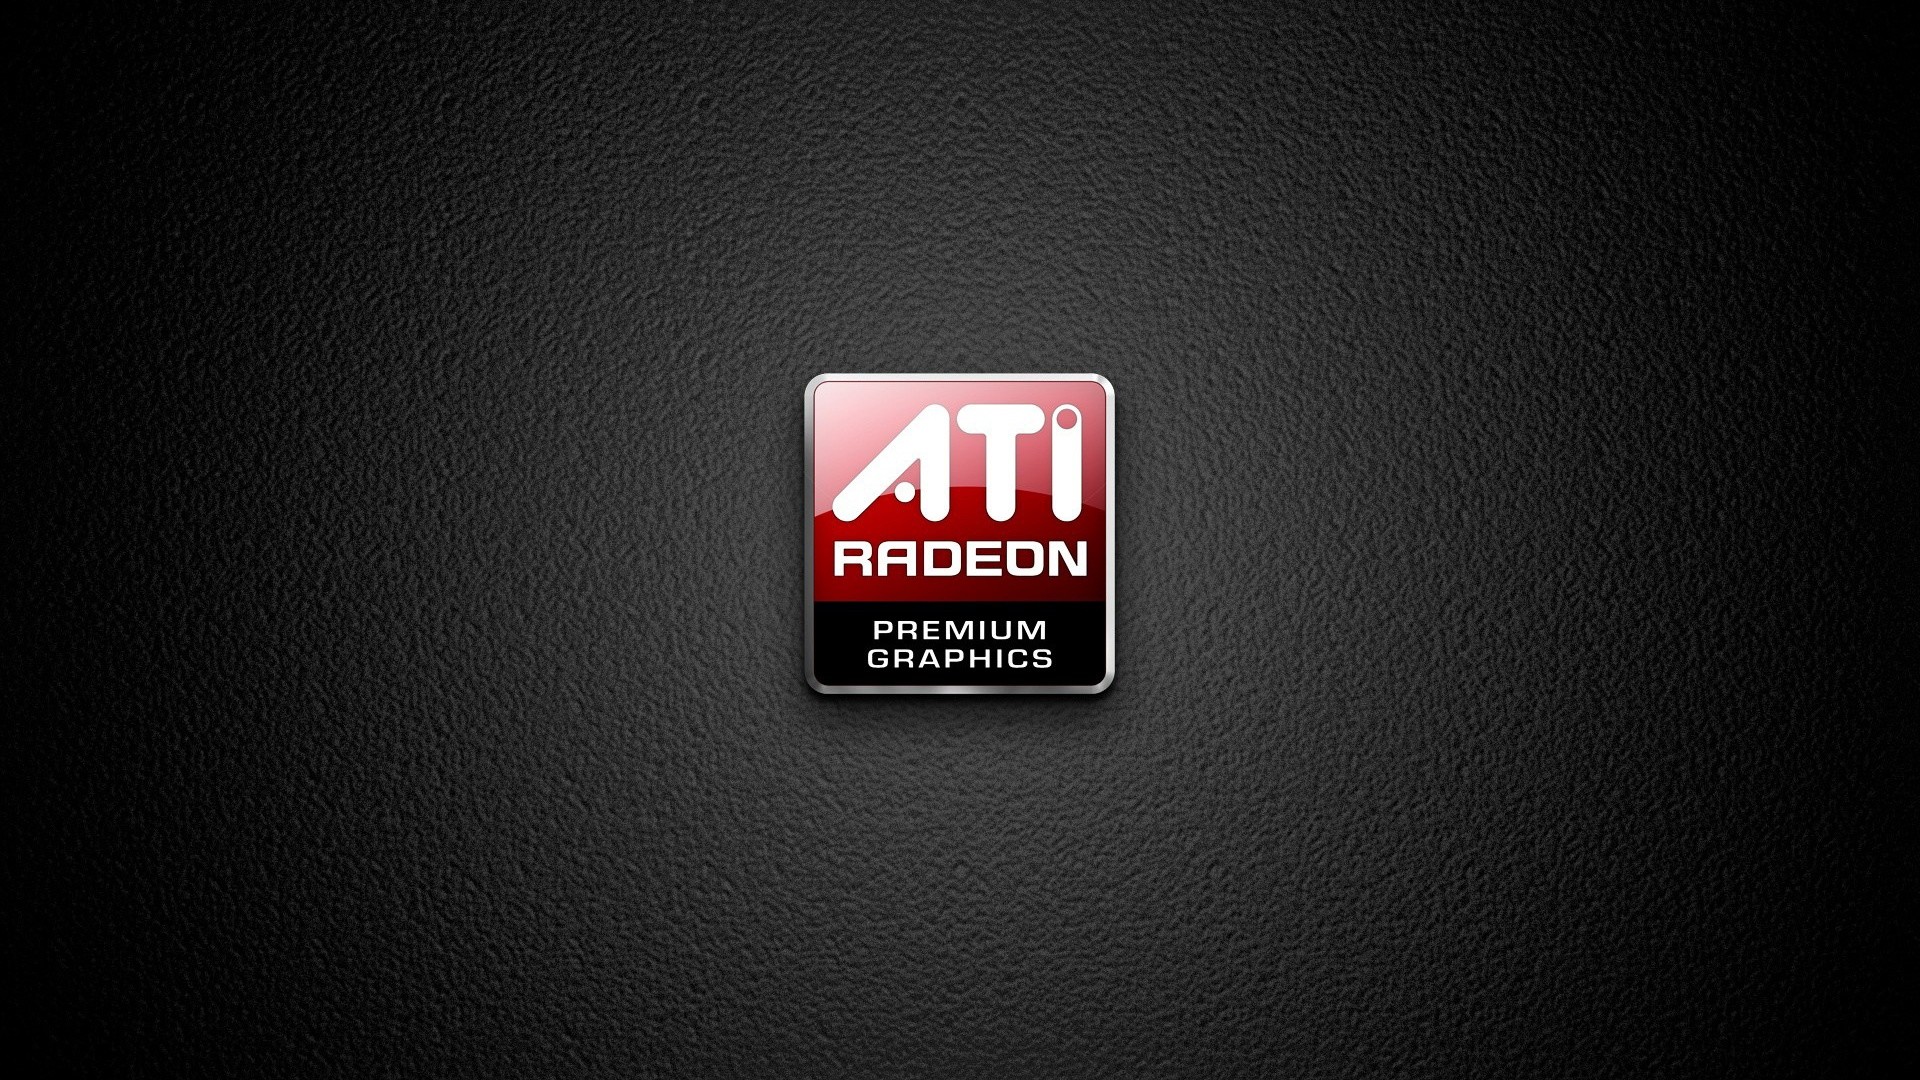 AMD Radeon Wallpapers – WallpaperSafari